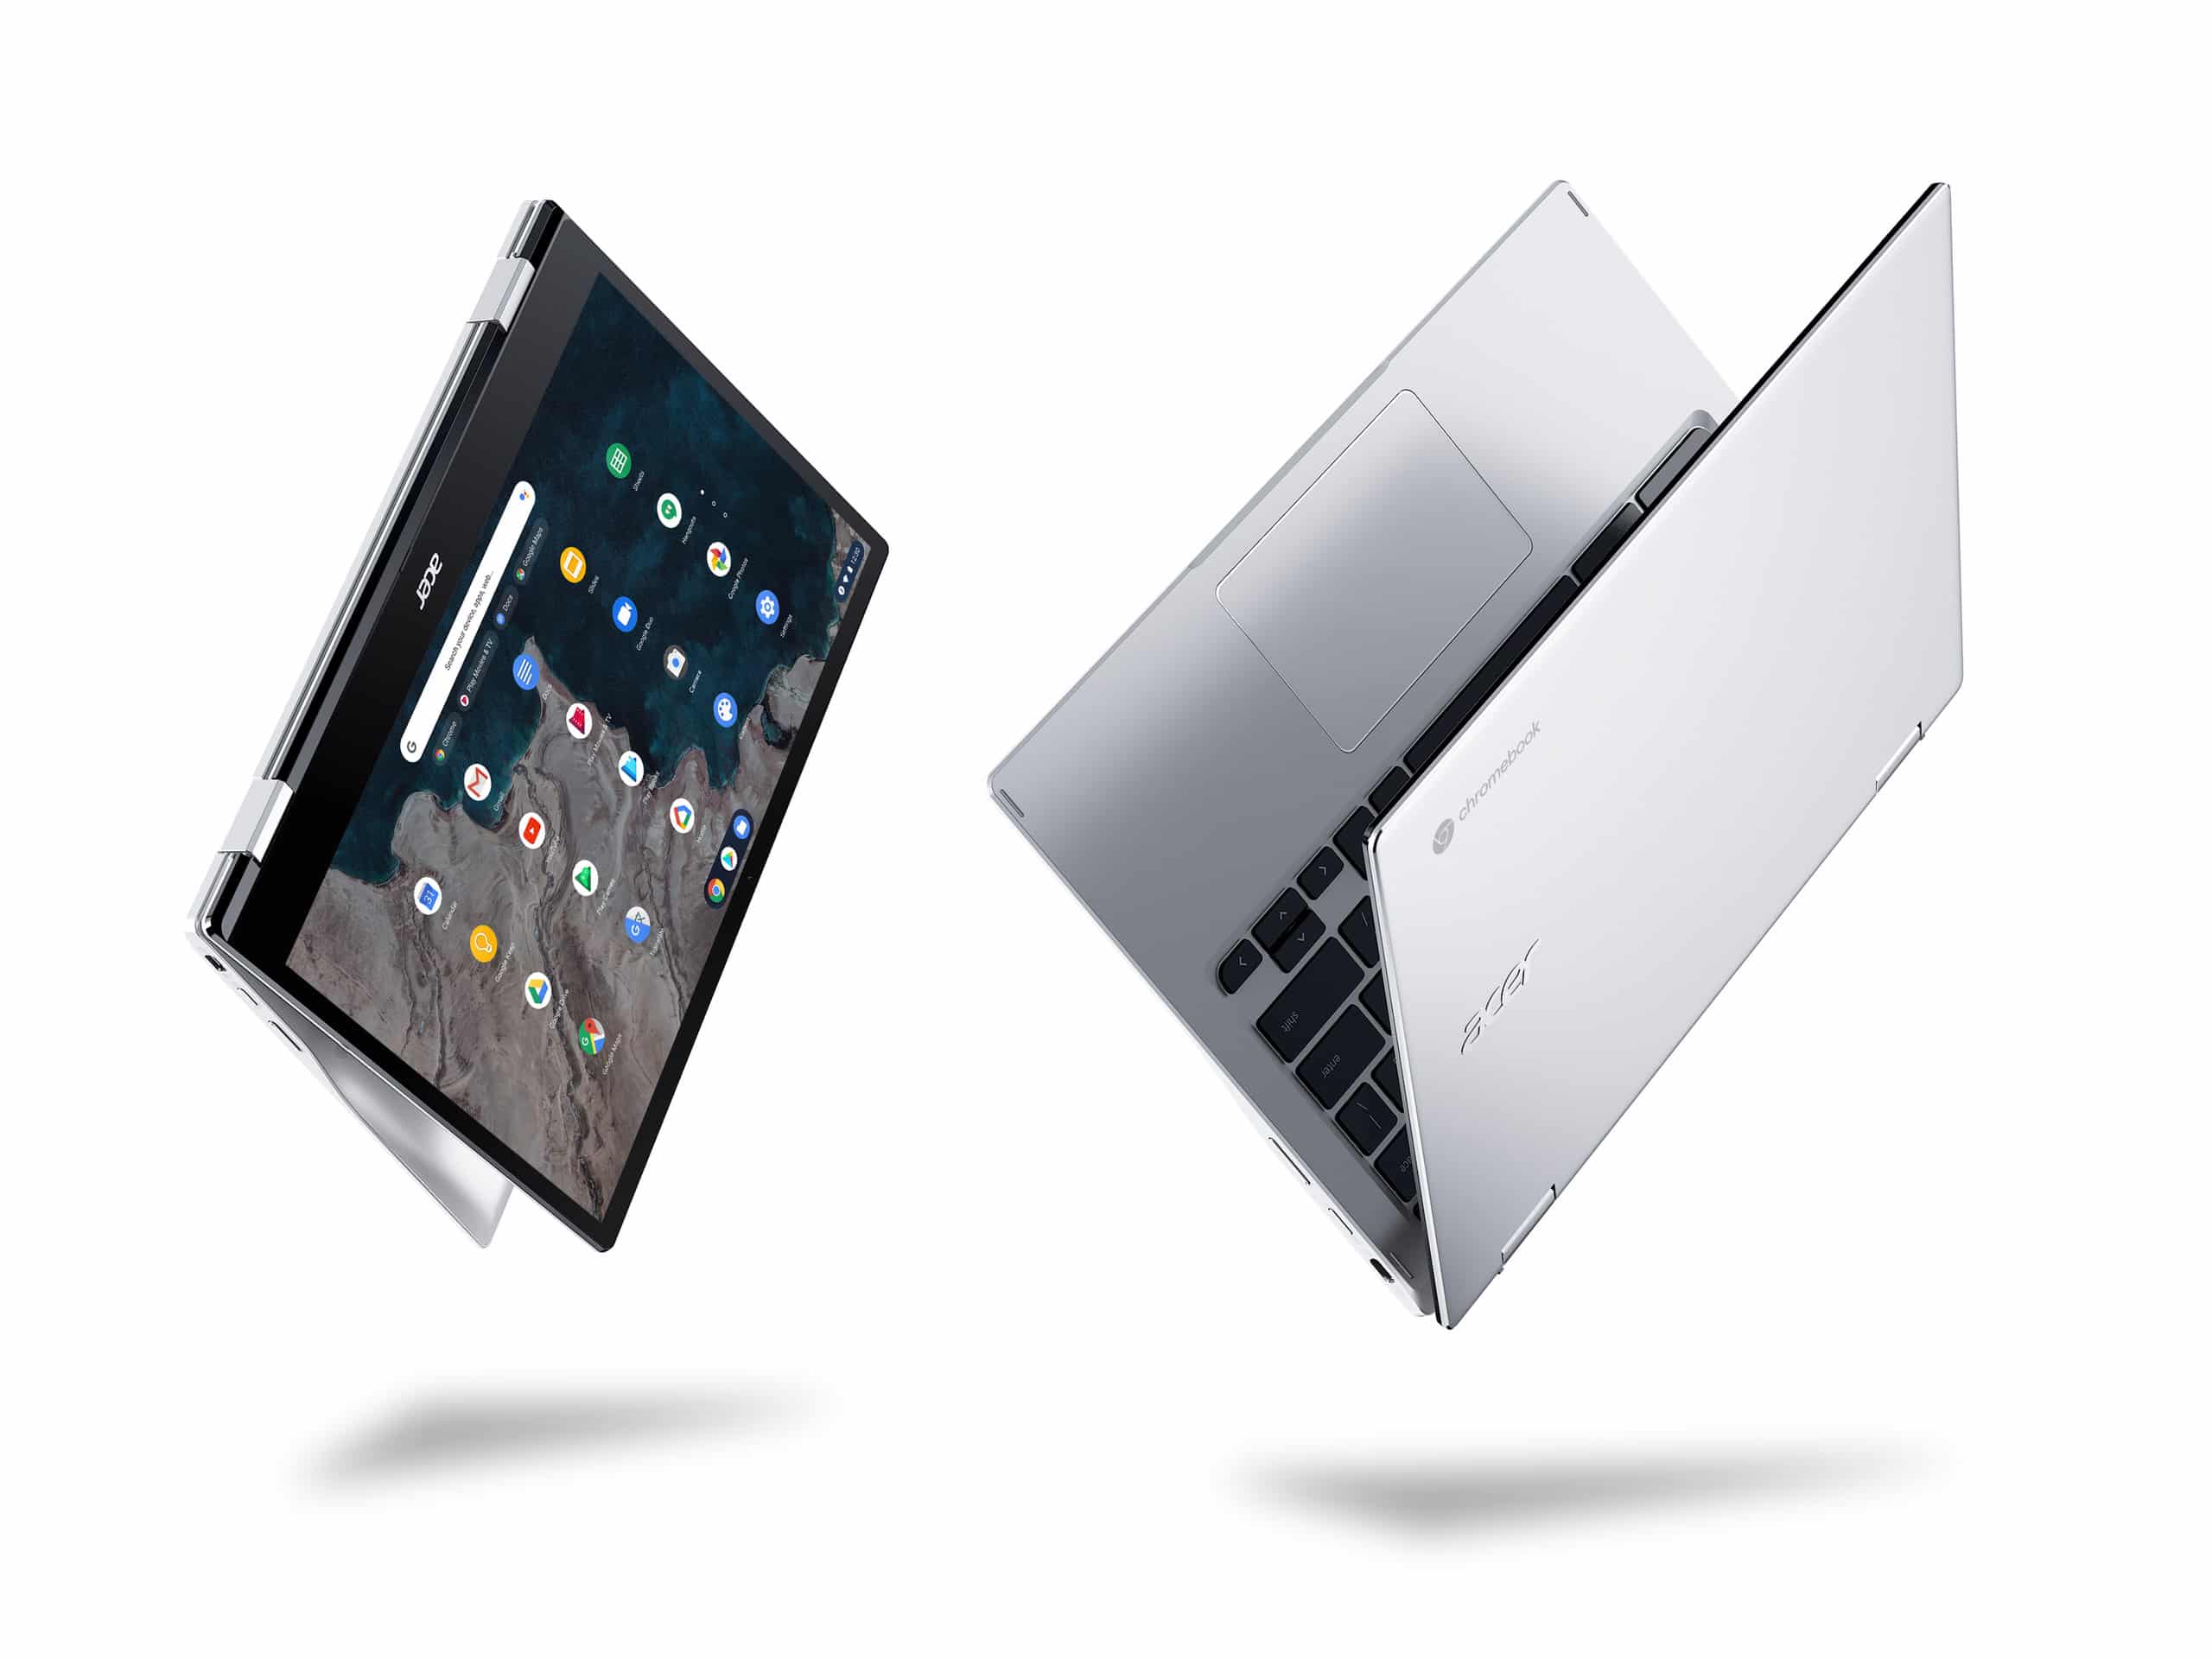 Acer lần đầu công bố Chromebook trang bị chip Qualcomm Snapdragon 7c với thiết kế siêu di động, hỗ trợ 4G LTE